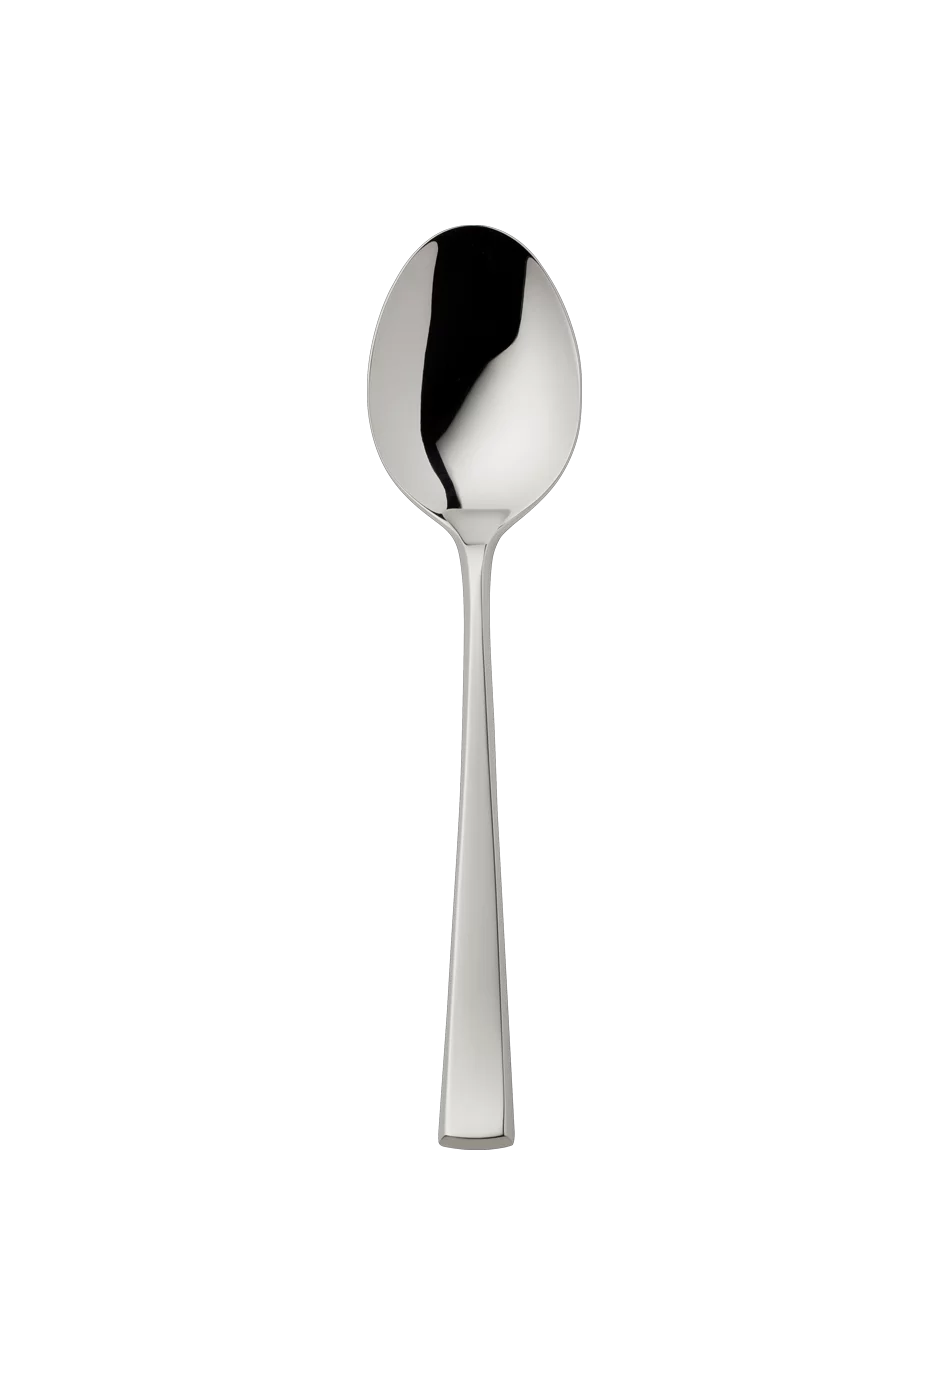 York Menu Spoon (18/8 stainless steel)